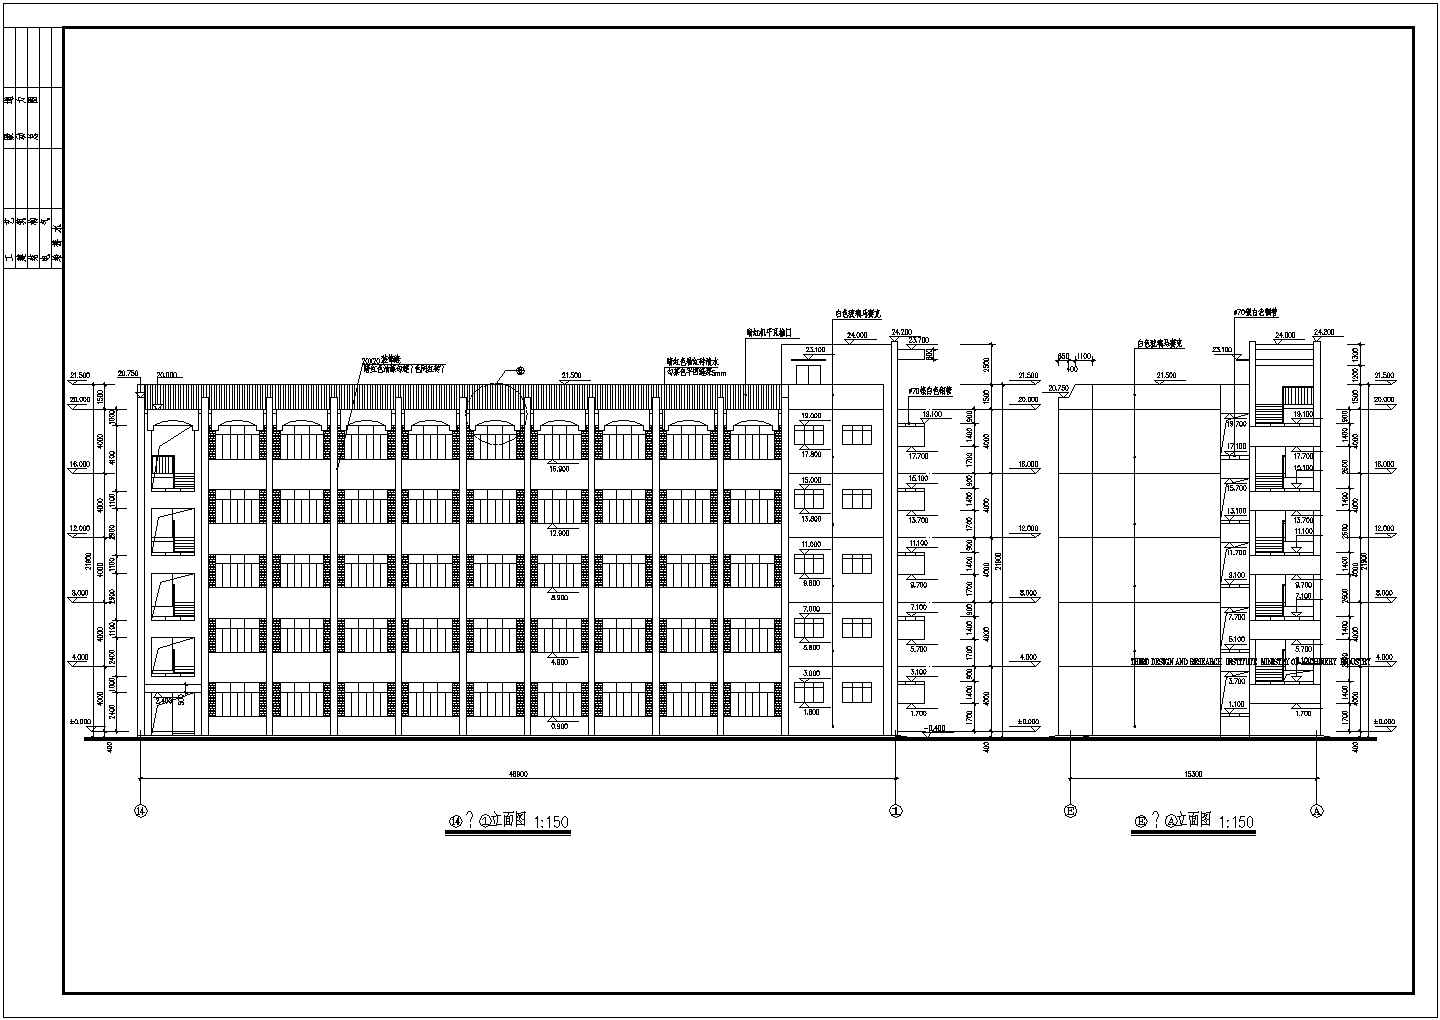 钢筋混凝土框架五层学校教学楼建筑施工图